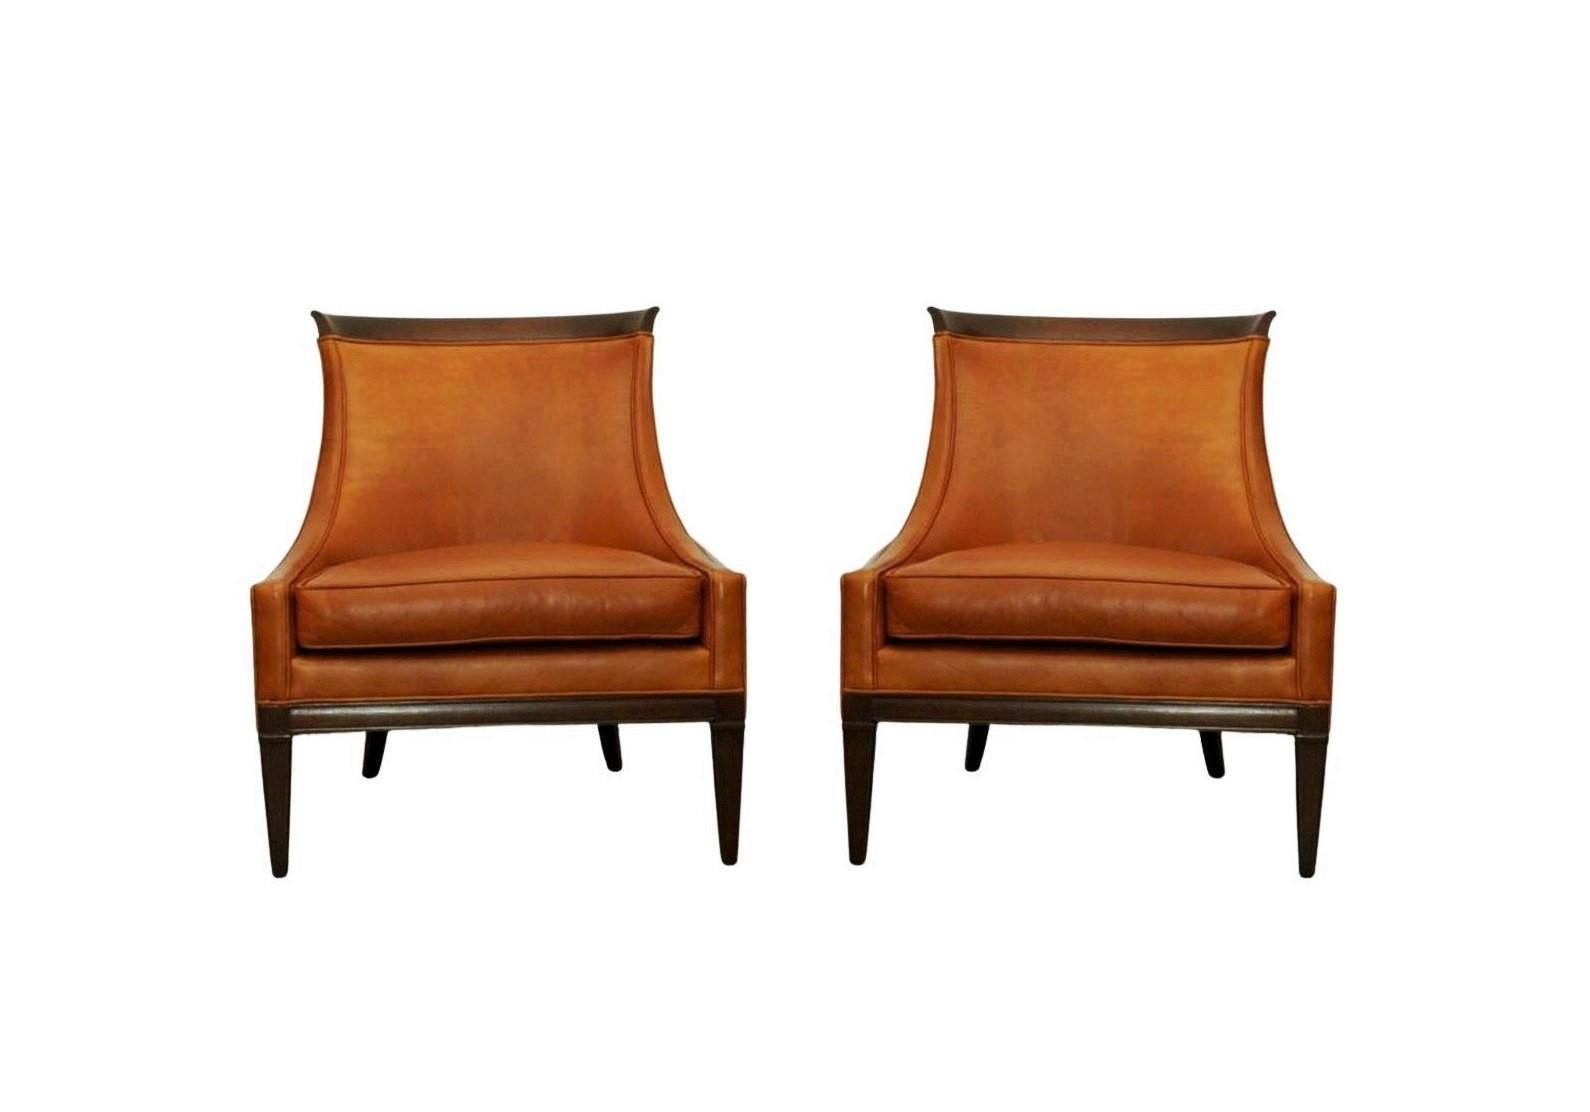 Une belle paire de chaises longues en forme de pantalon, vers les années 1960. Conçue avec une approche minimaliste, chaque chaise présente des proportions et une échelle parfaites pour la facilité et le confort. Avec son dossier haut et sa